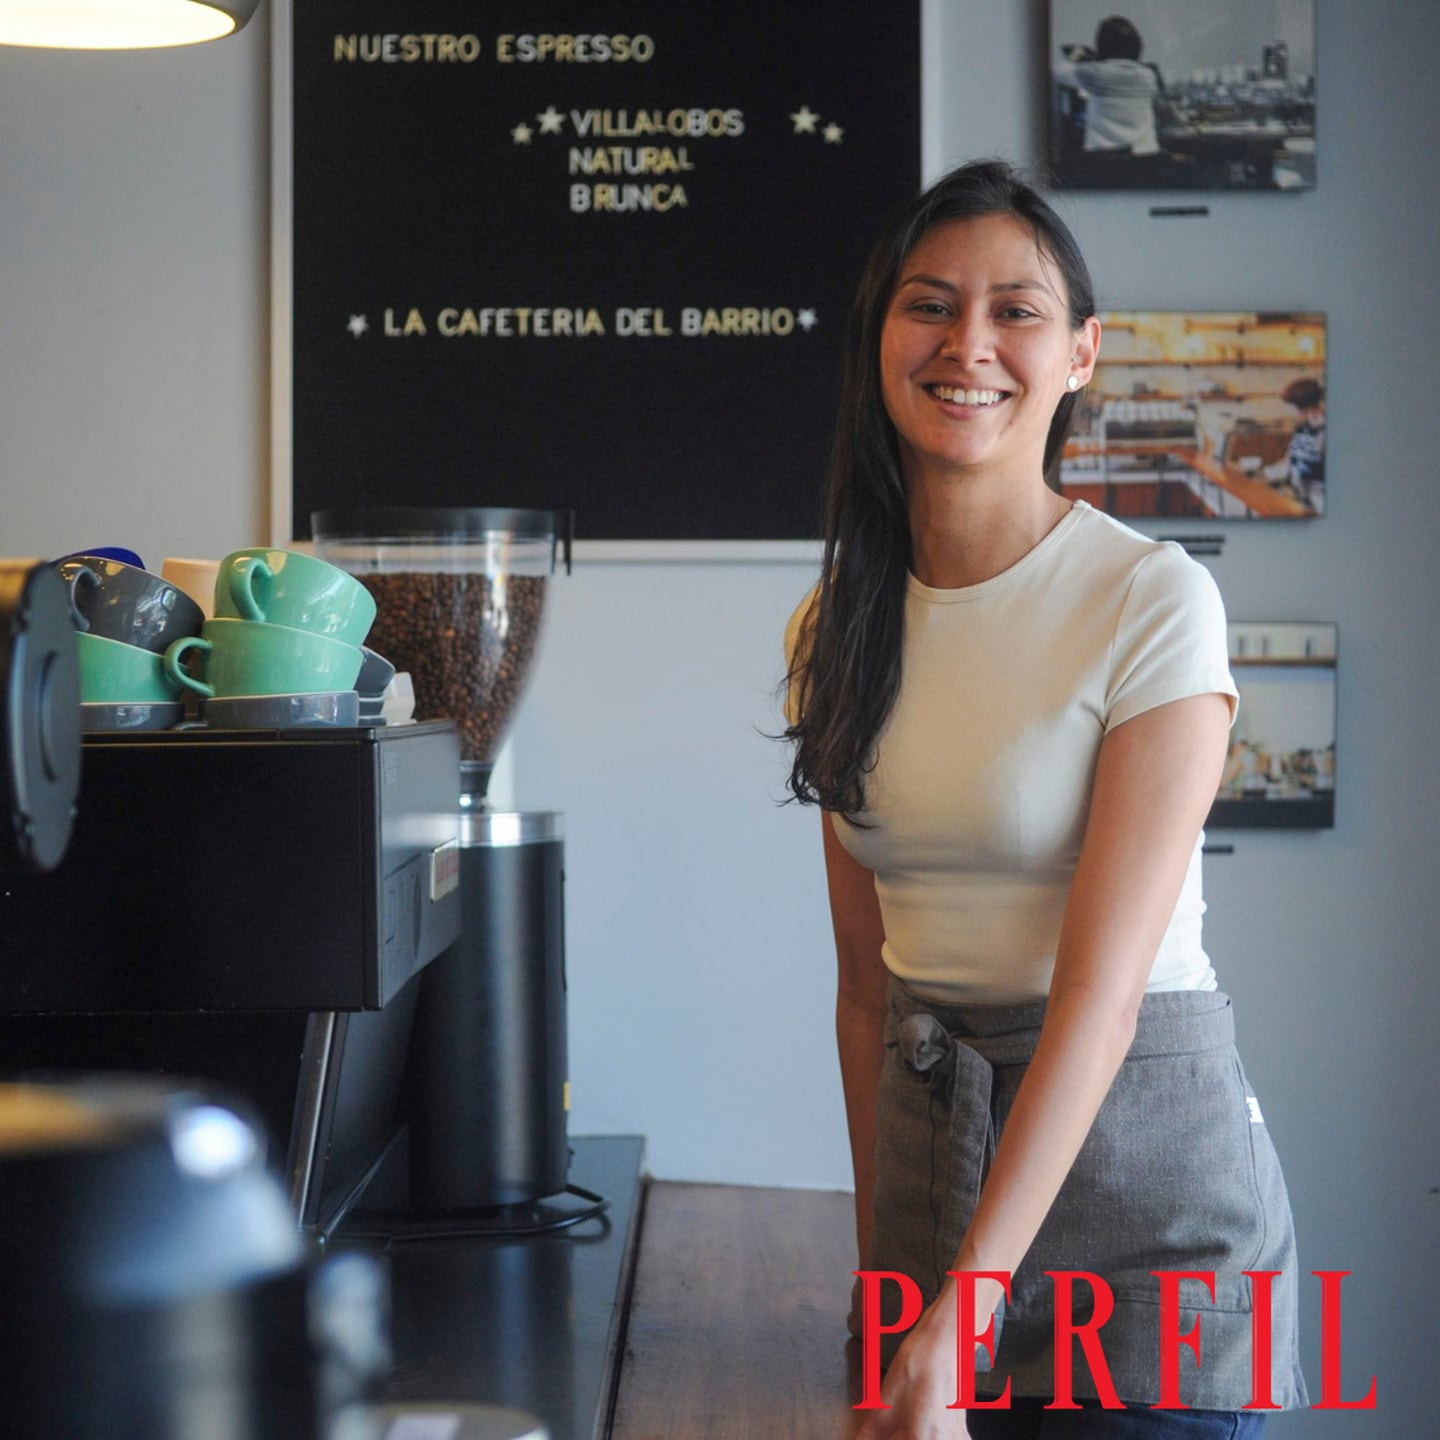 María Elena Rivera descubrió su pasión por el café desde su infancia en Cartago